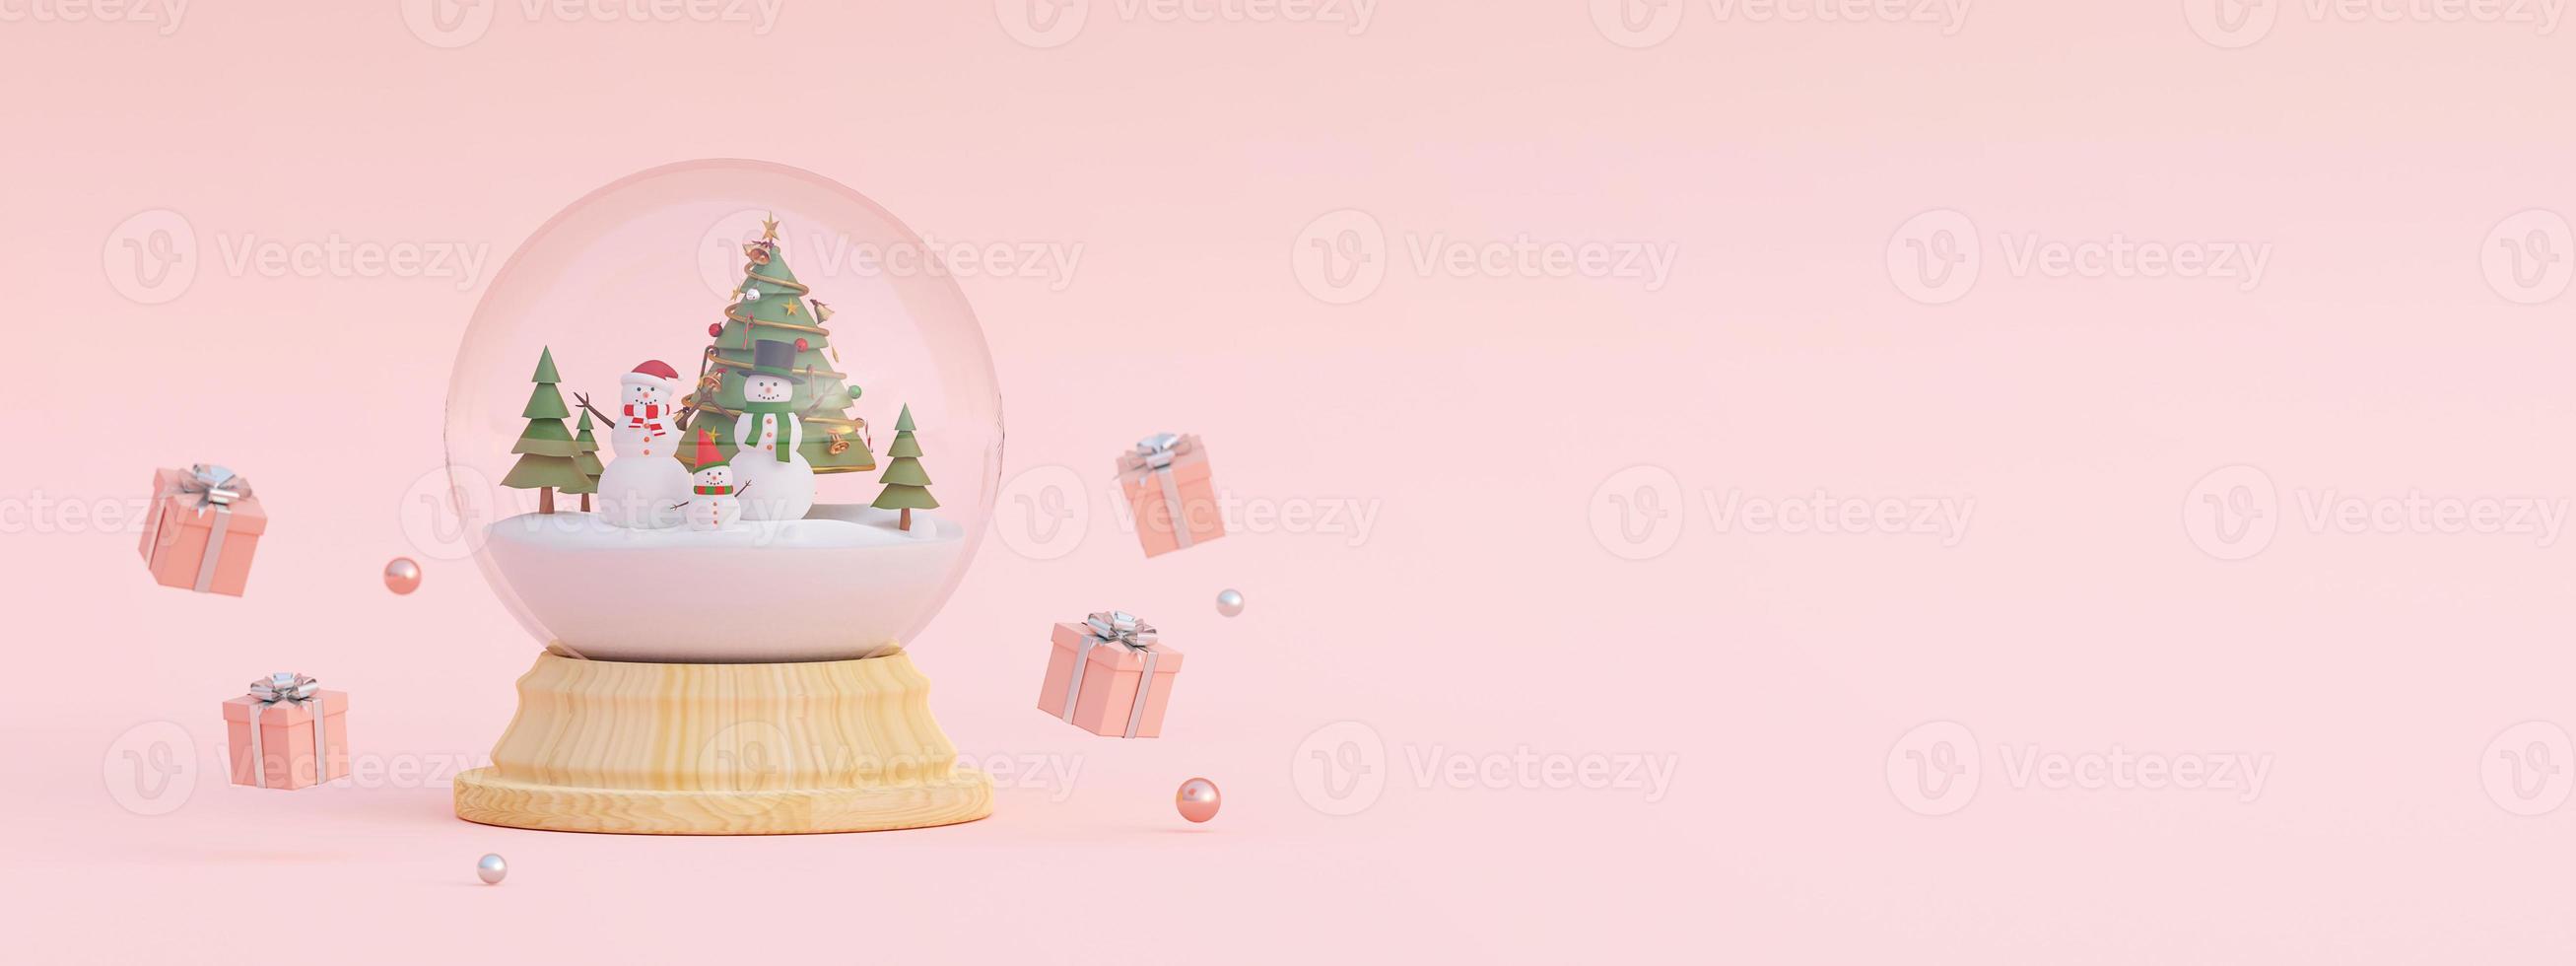 joyeux noël et bonne année, scène de cadeaux de noël et bonhomme de neige avec arbre de noël dans une boule à neige, rendu 3d photo